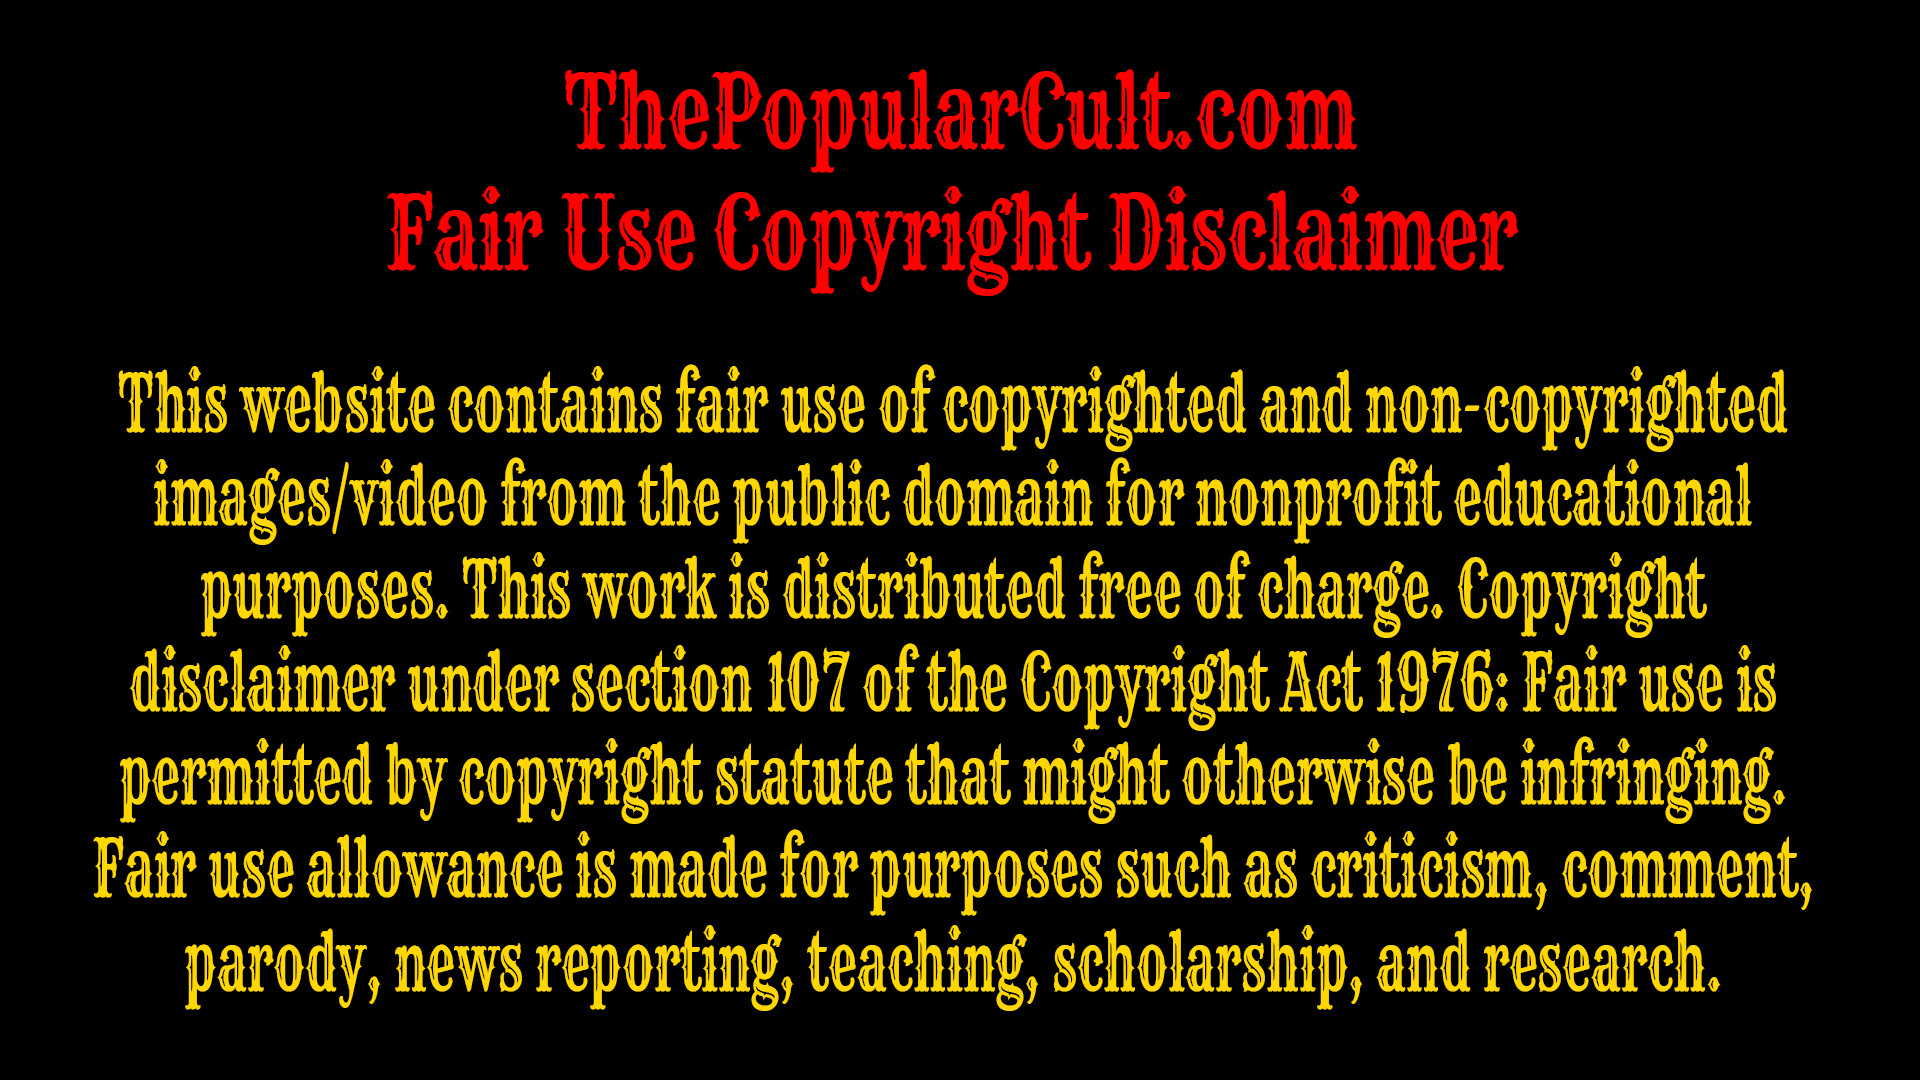 The Popular Cult Fair Use Copyright Disclaimer